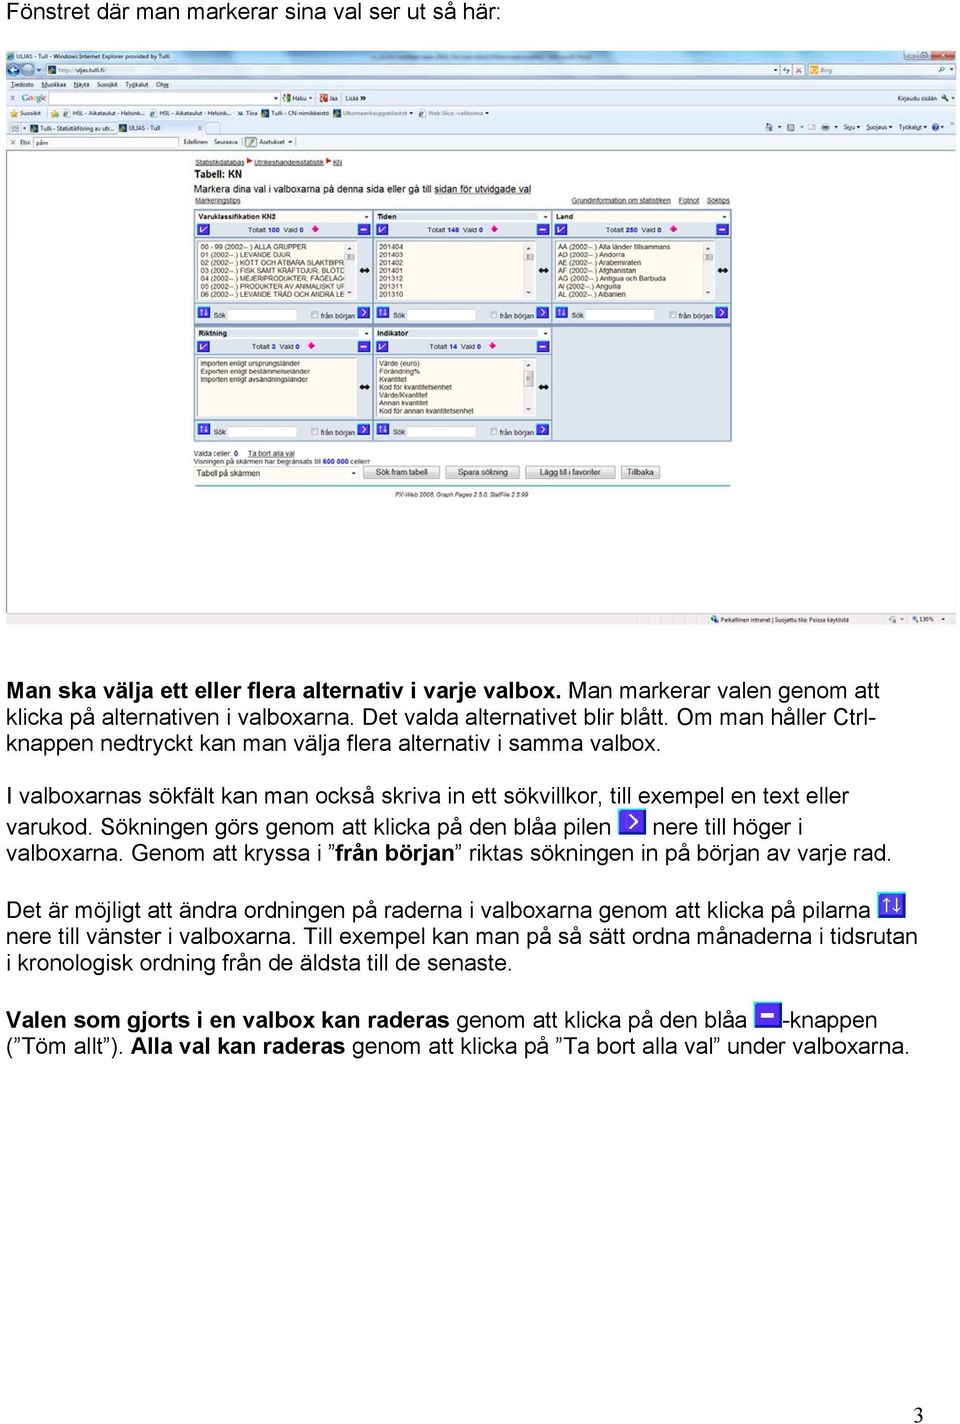 I valboxarnas sökfält kan man också skriva in ett sökvillkor, till exempel en text eller varukod. Sökningen görs genom att klicka på den blåa pilen nere till höger i valboxarna.